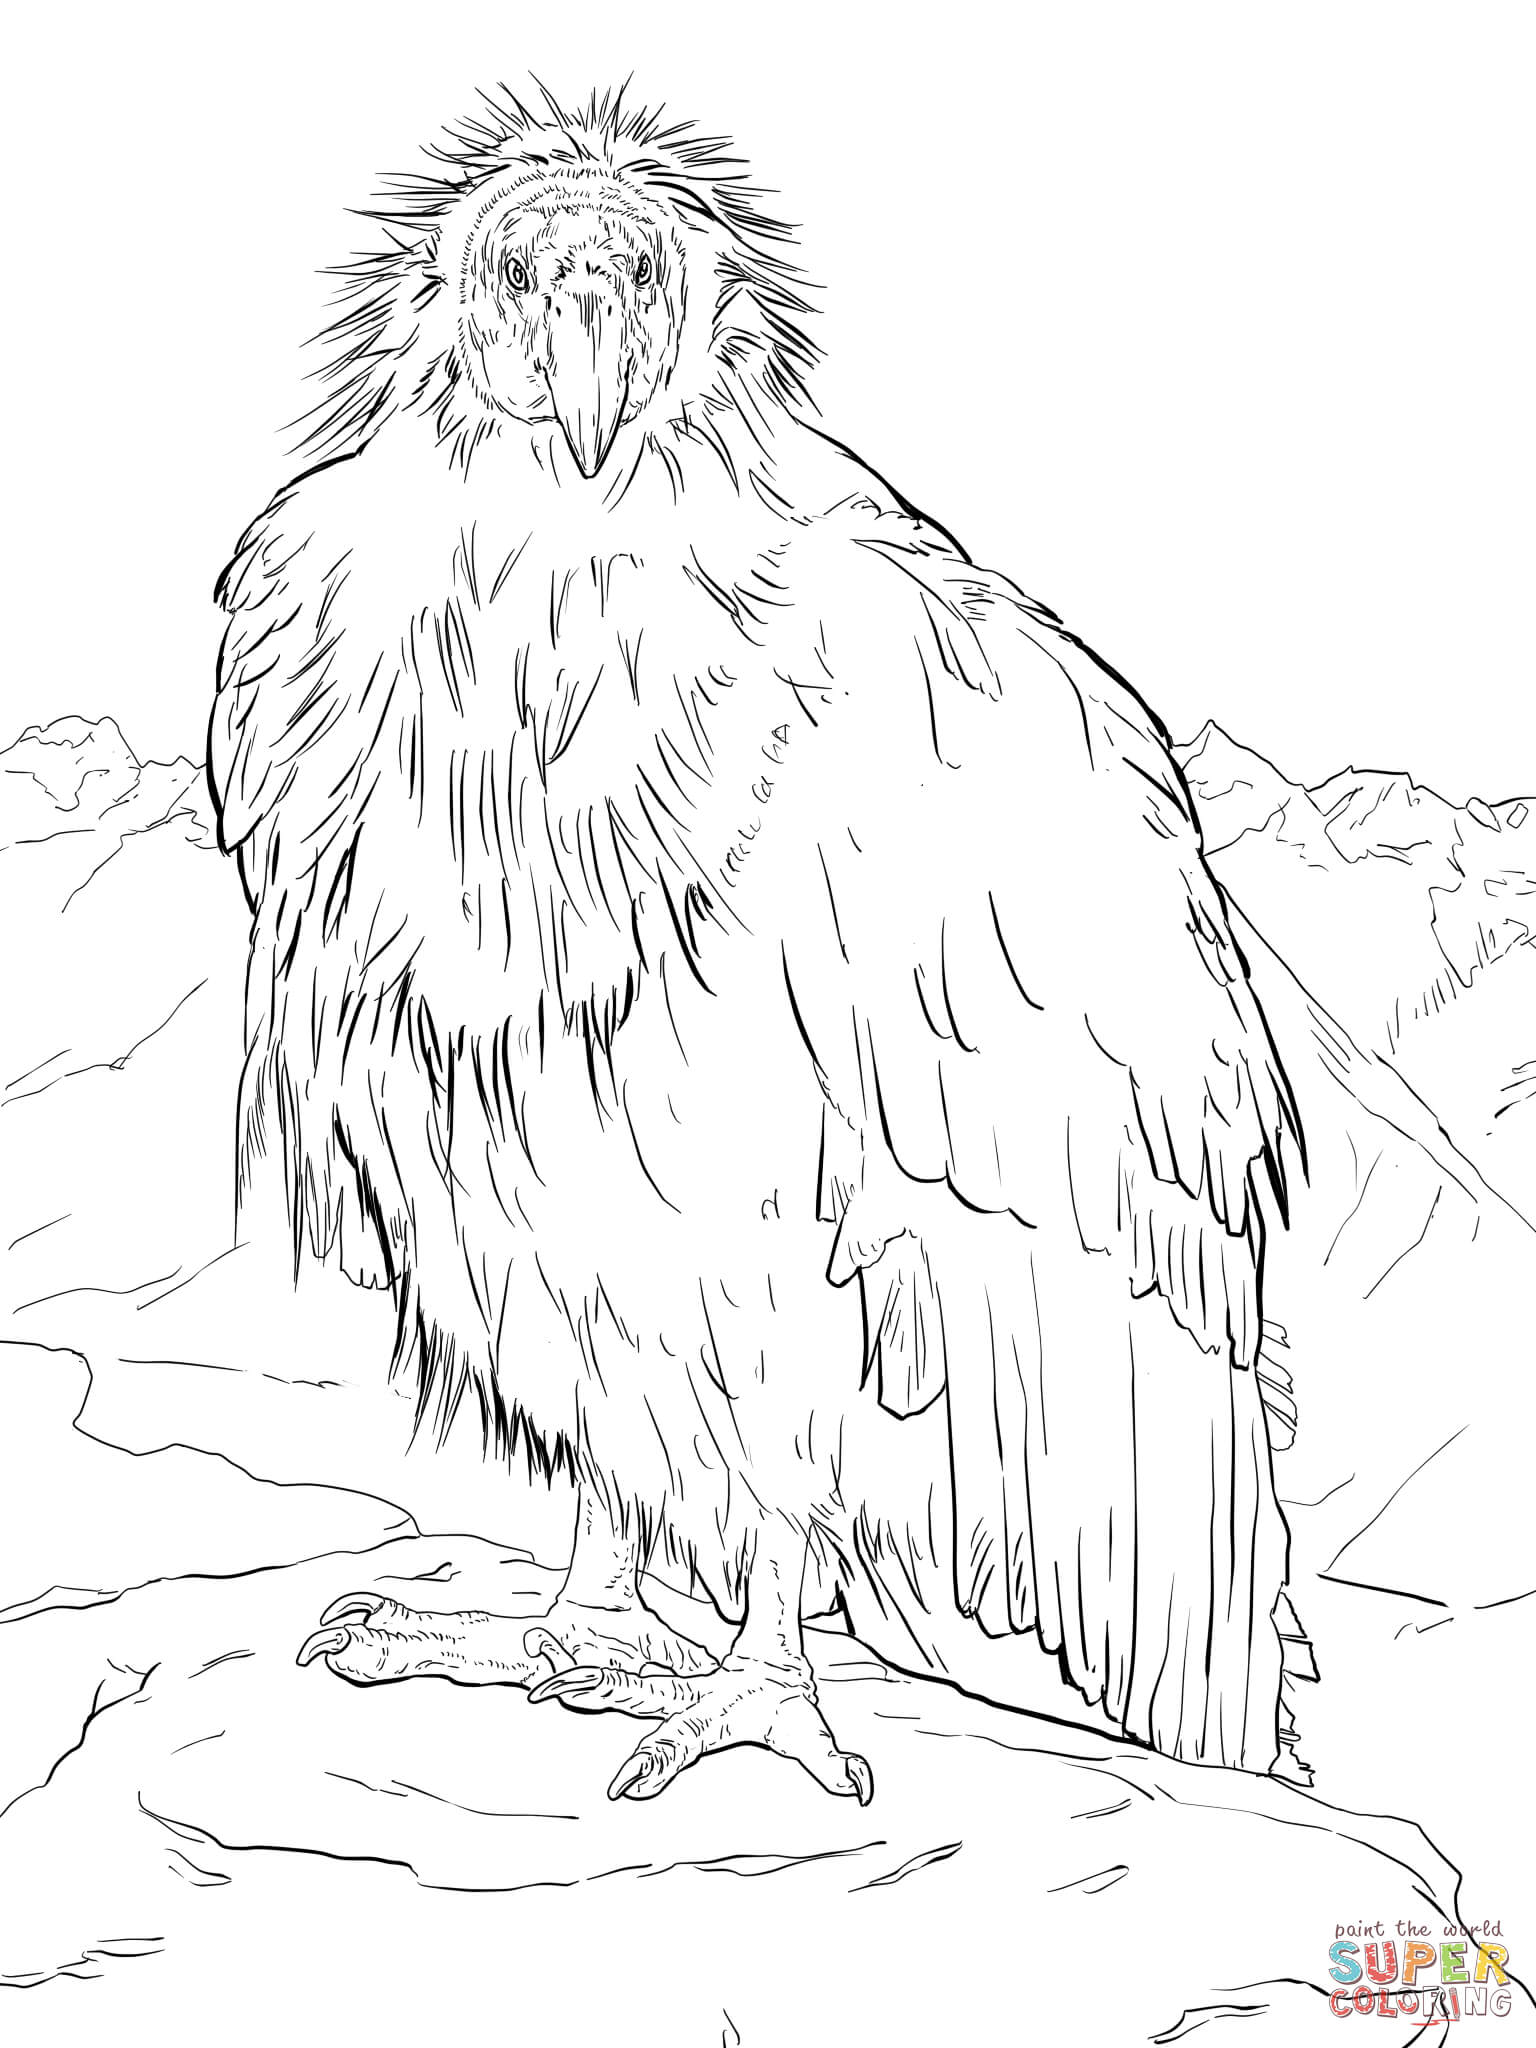 California Condor  coloring #2, Download drawings